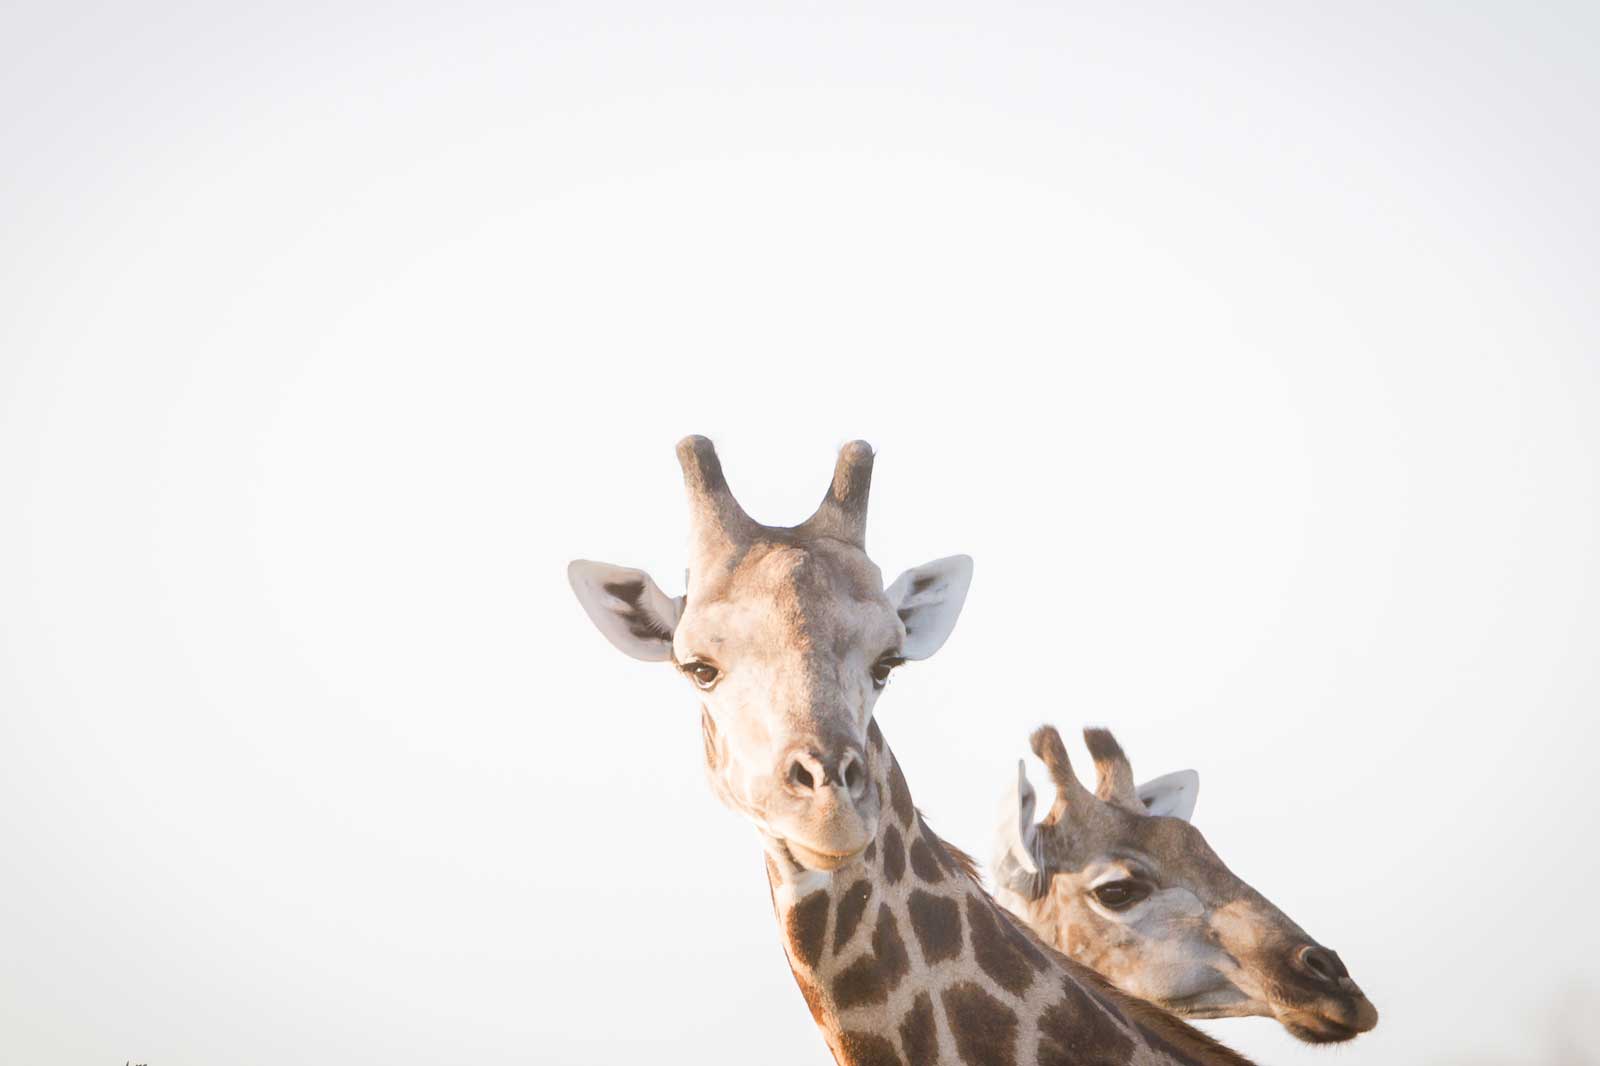 Giraffe at RAW Botswana, Motswiri Camp